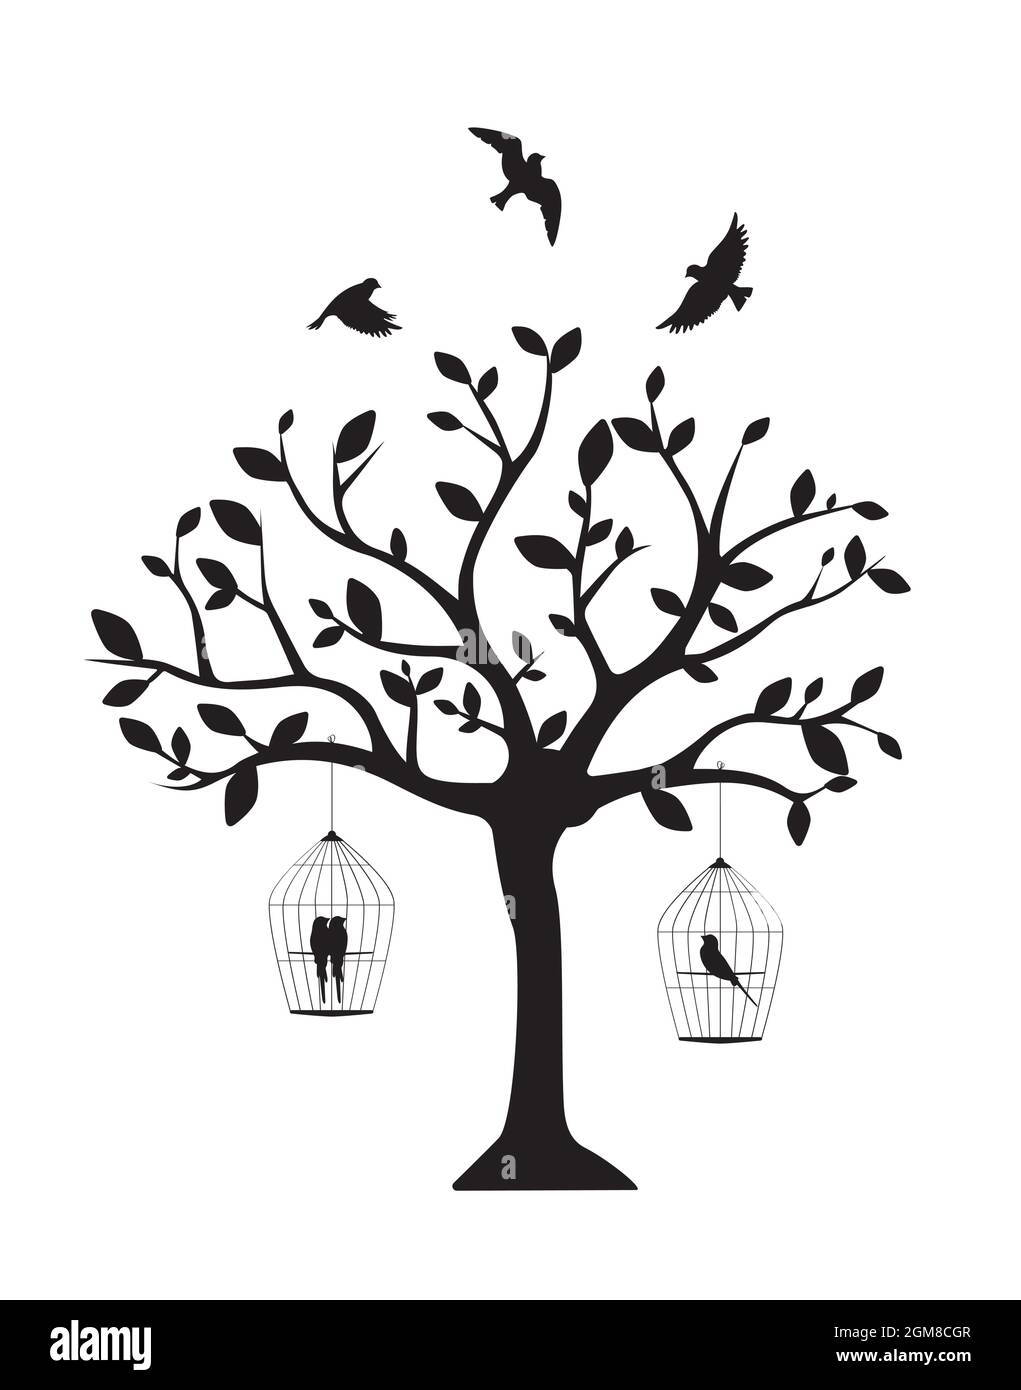 Silueta de árbol con pájaro jaula y siluetas de pájaro volador, vector.  Diseño de dibujos animados infantiles. Diseño artístico en blanco y negro.  Calcomanías de pared, arte de pared, obras de arte